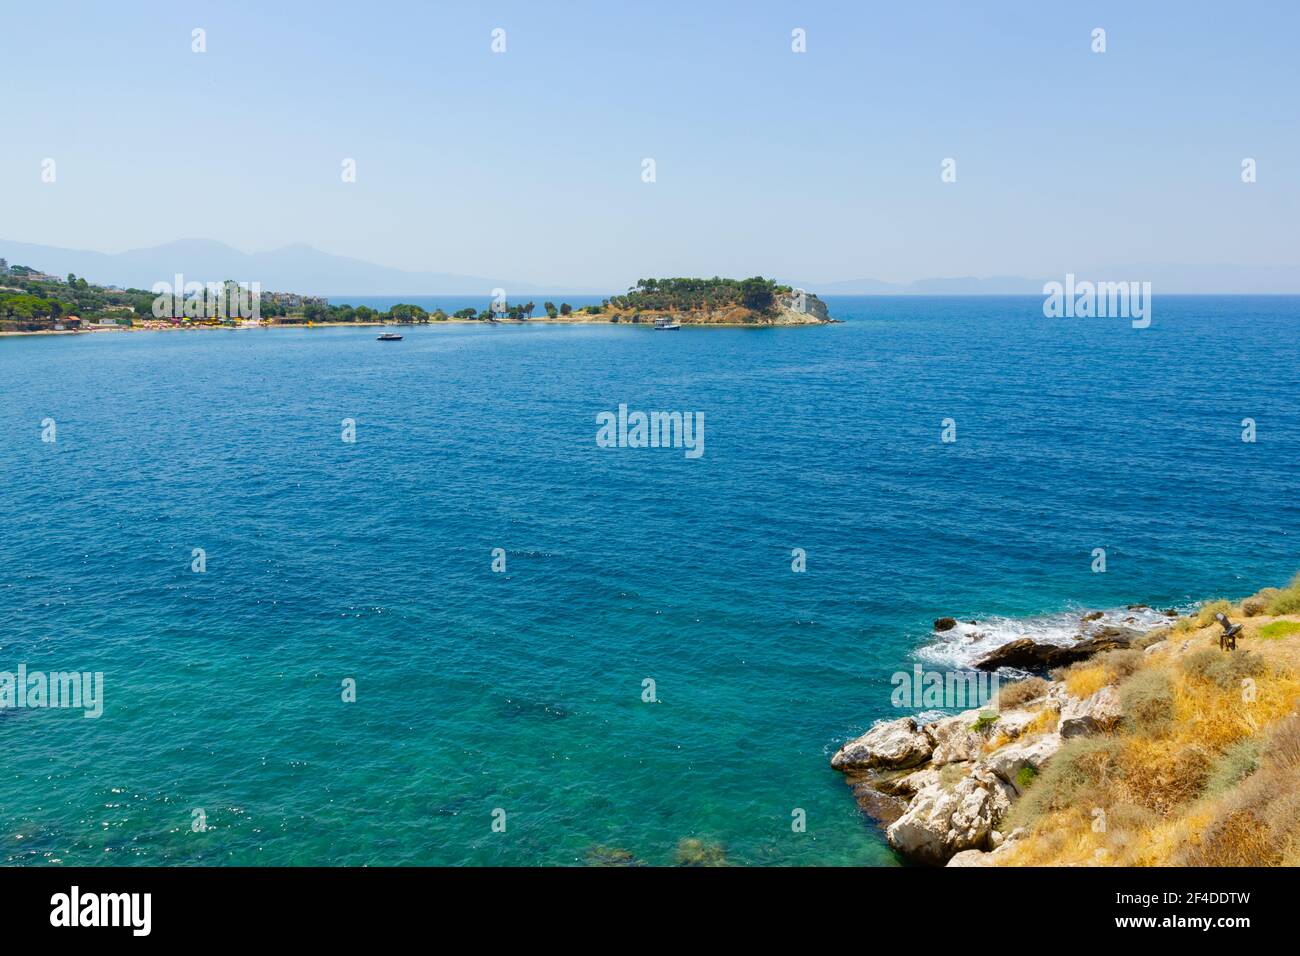 Horizontale Ansicht des türkisfarbenen Wassers des Meeres. Wilde Lifs vor türkisfarbenem Wasser. Sommerurlaub am Meer Stockfoto